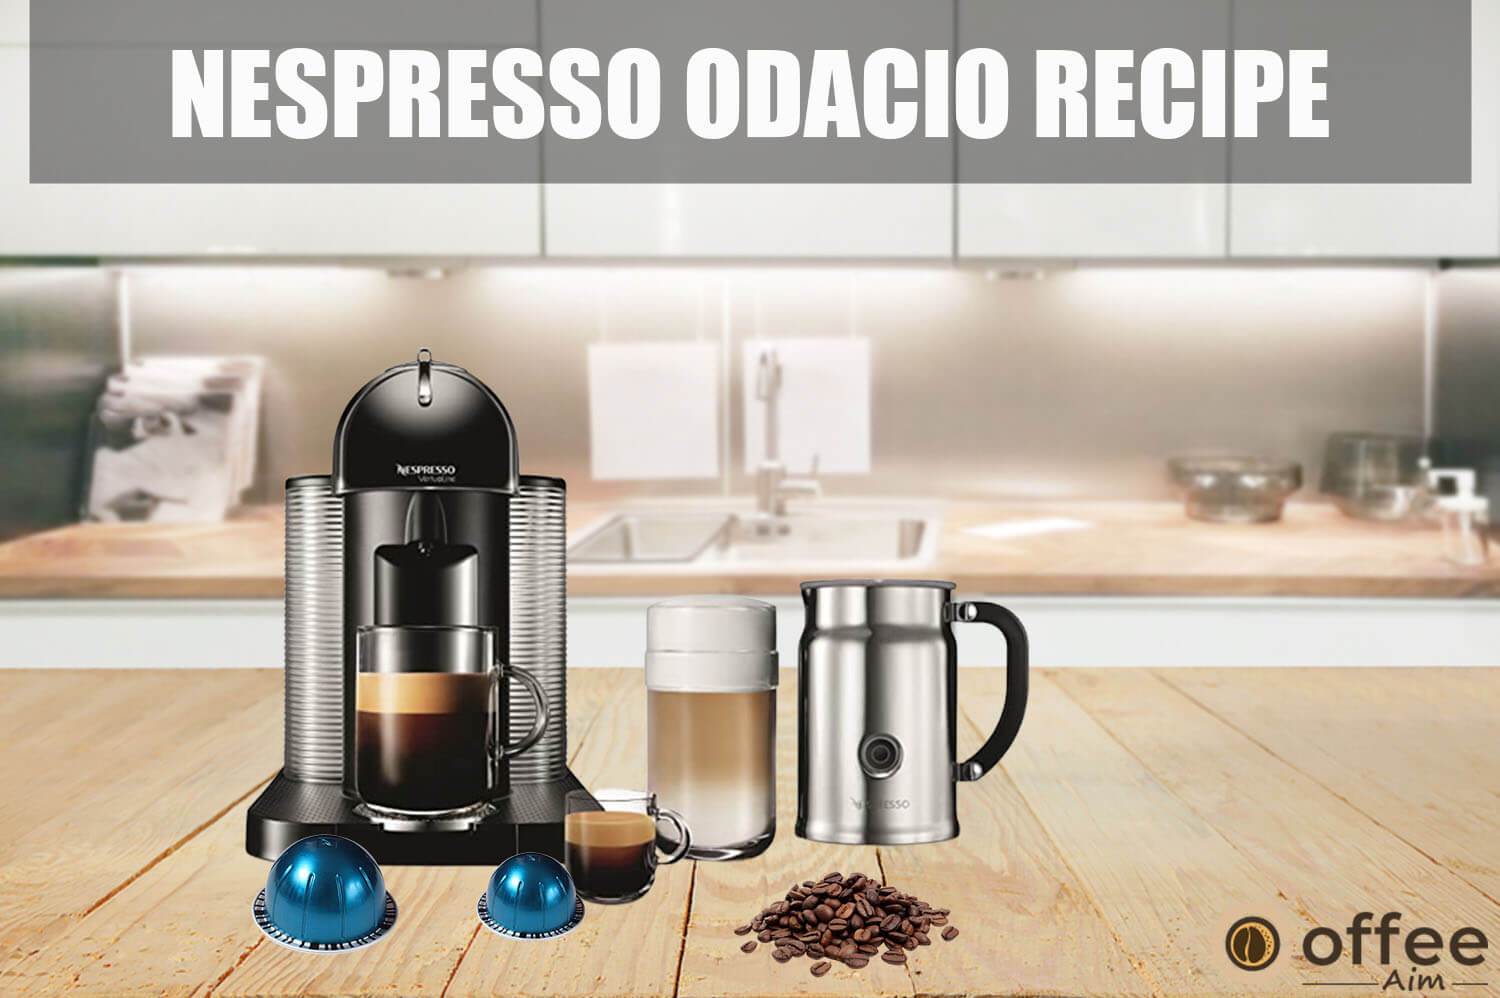 Featured image for the article "Nespresso Odacio Recipe"